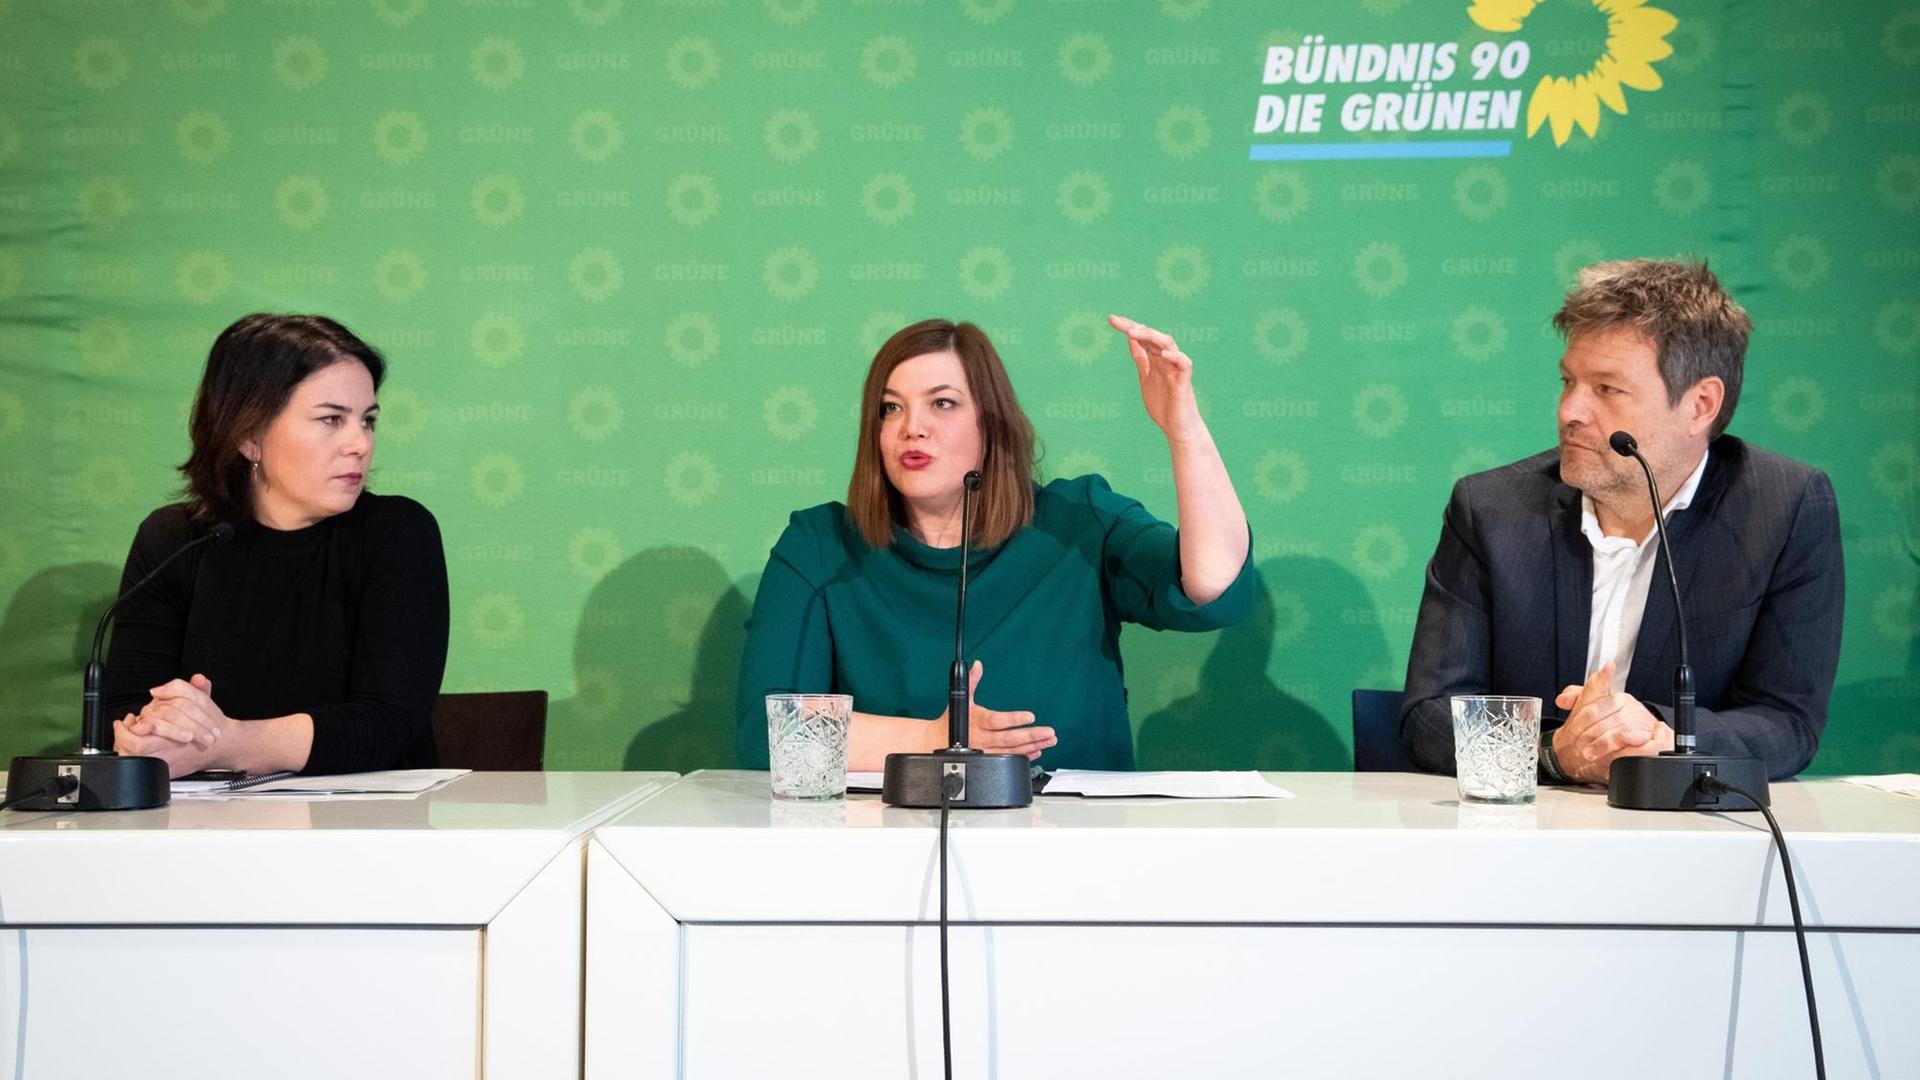 Im Bild sind die Grünen-Politikerinnen Annalena Baerbock, Katharina Fegebank und der Politiker Robert Habeck zu sehen.